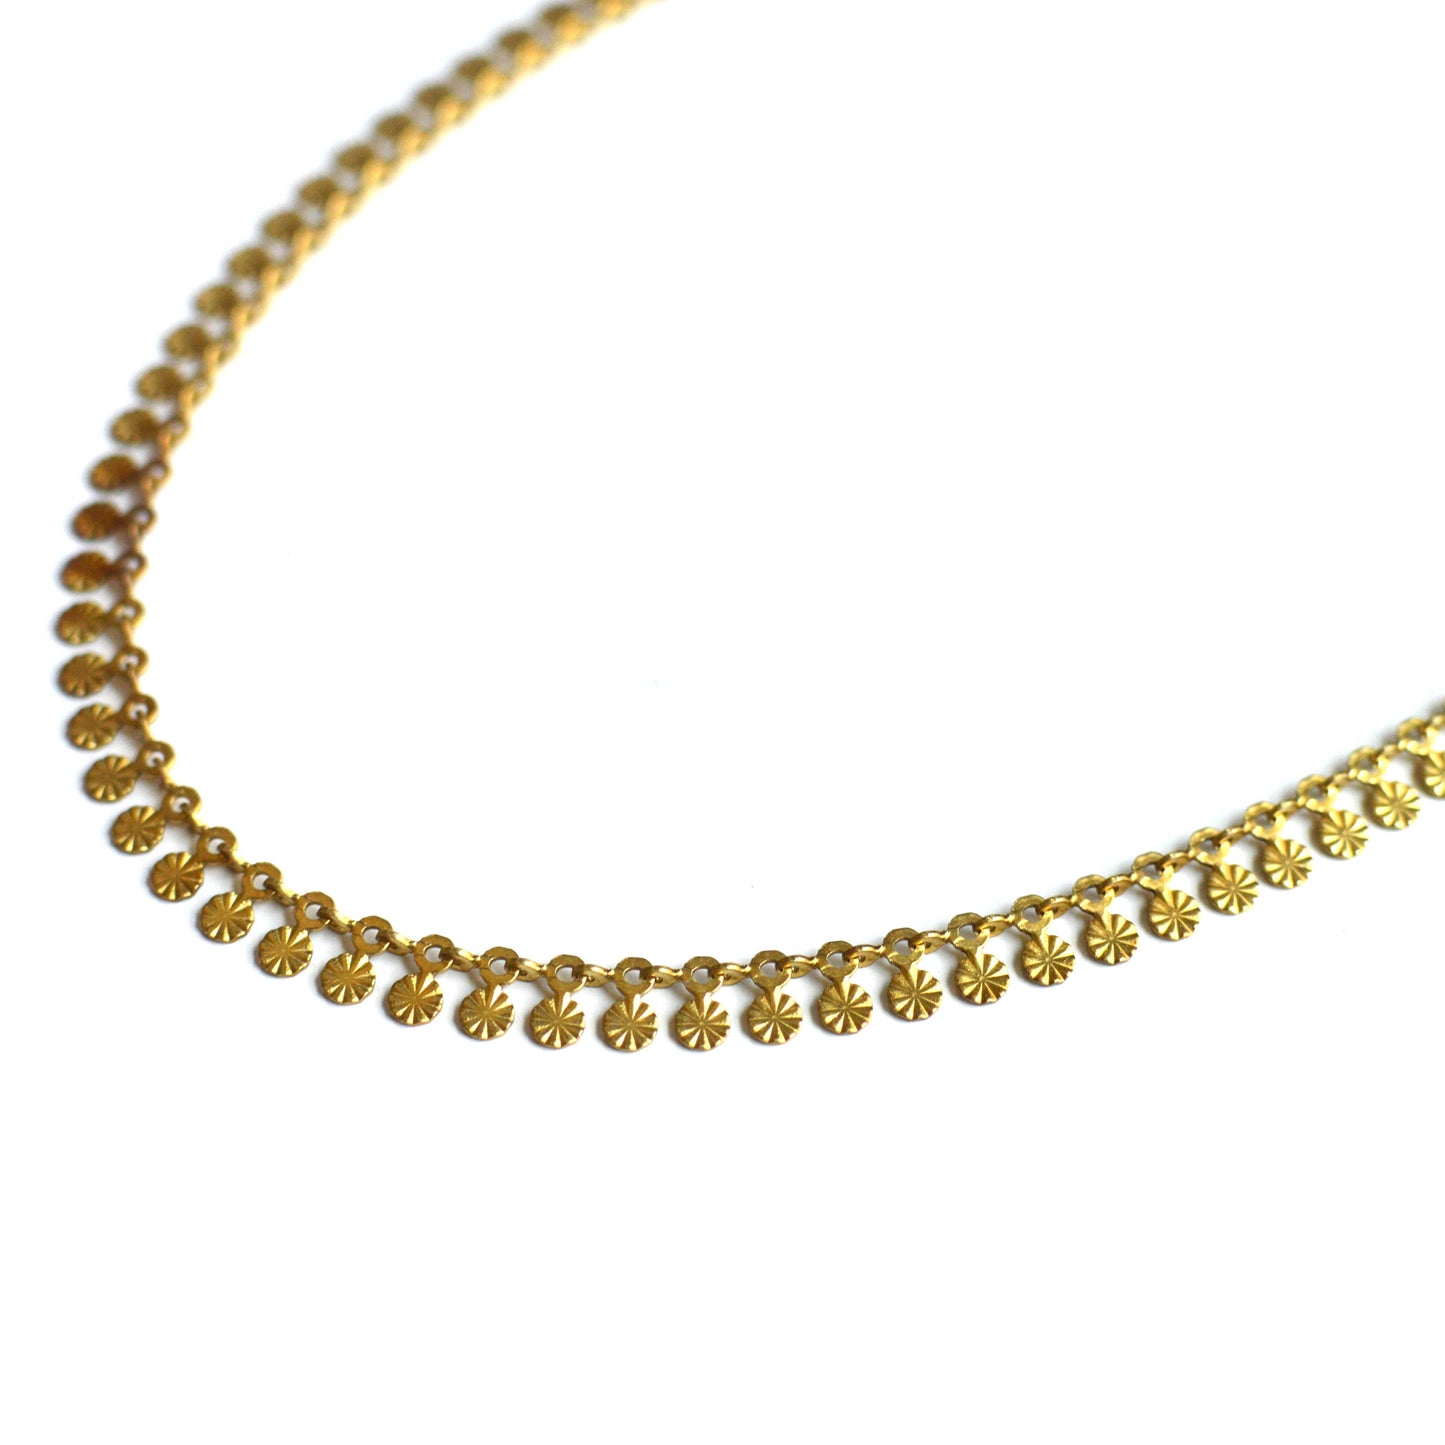 Ker-ij Jewelry - Sun Charm Choker Necklace